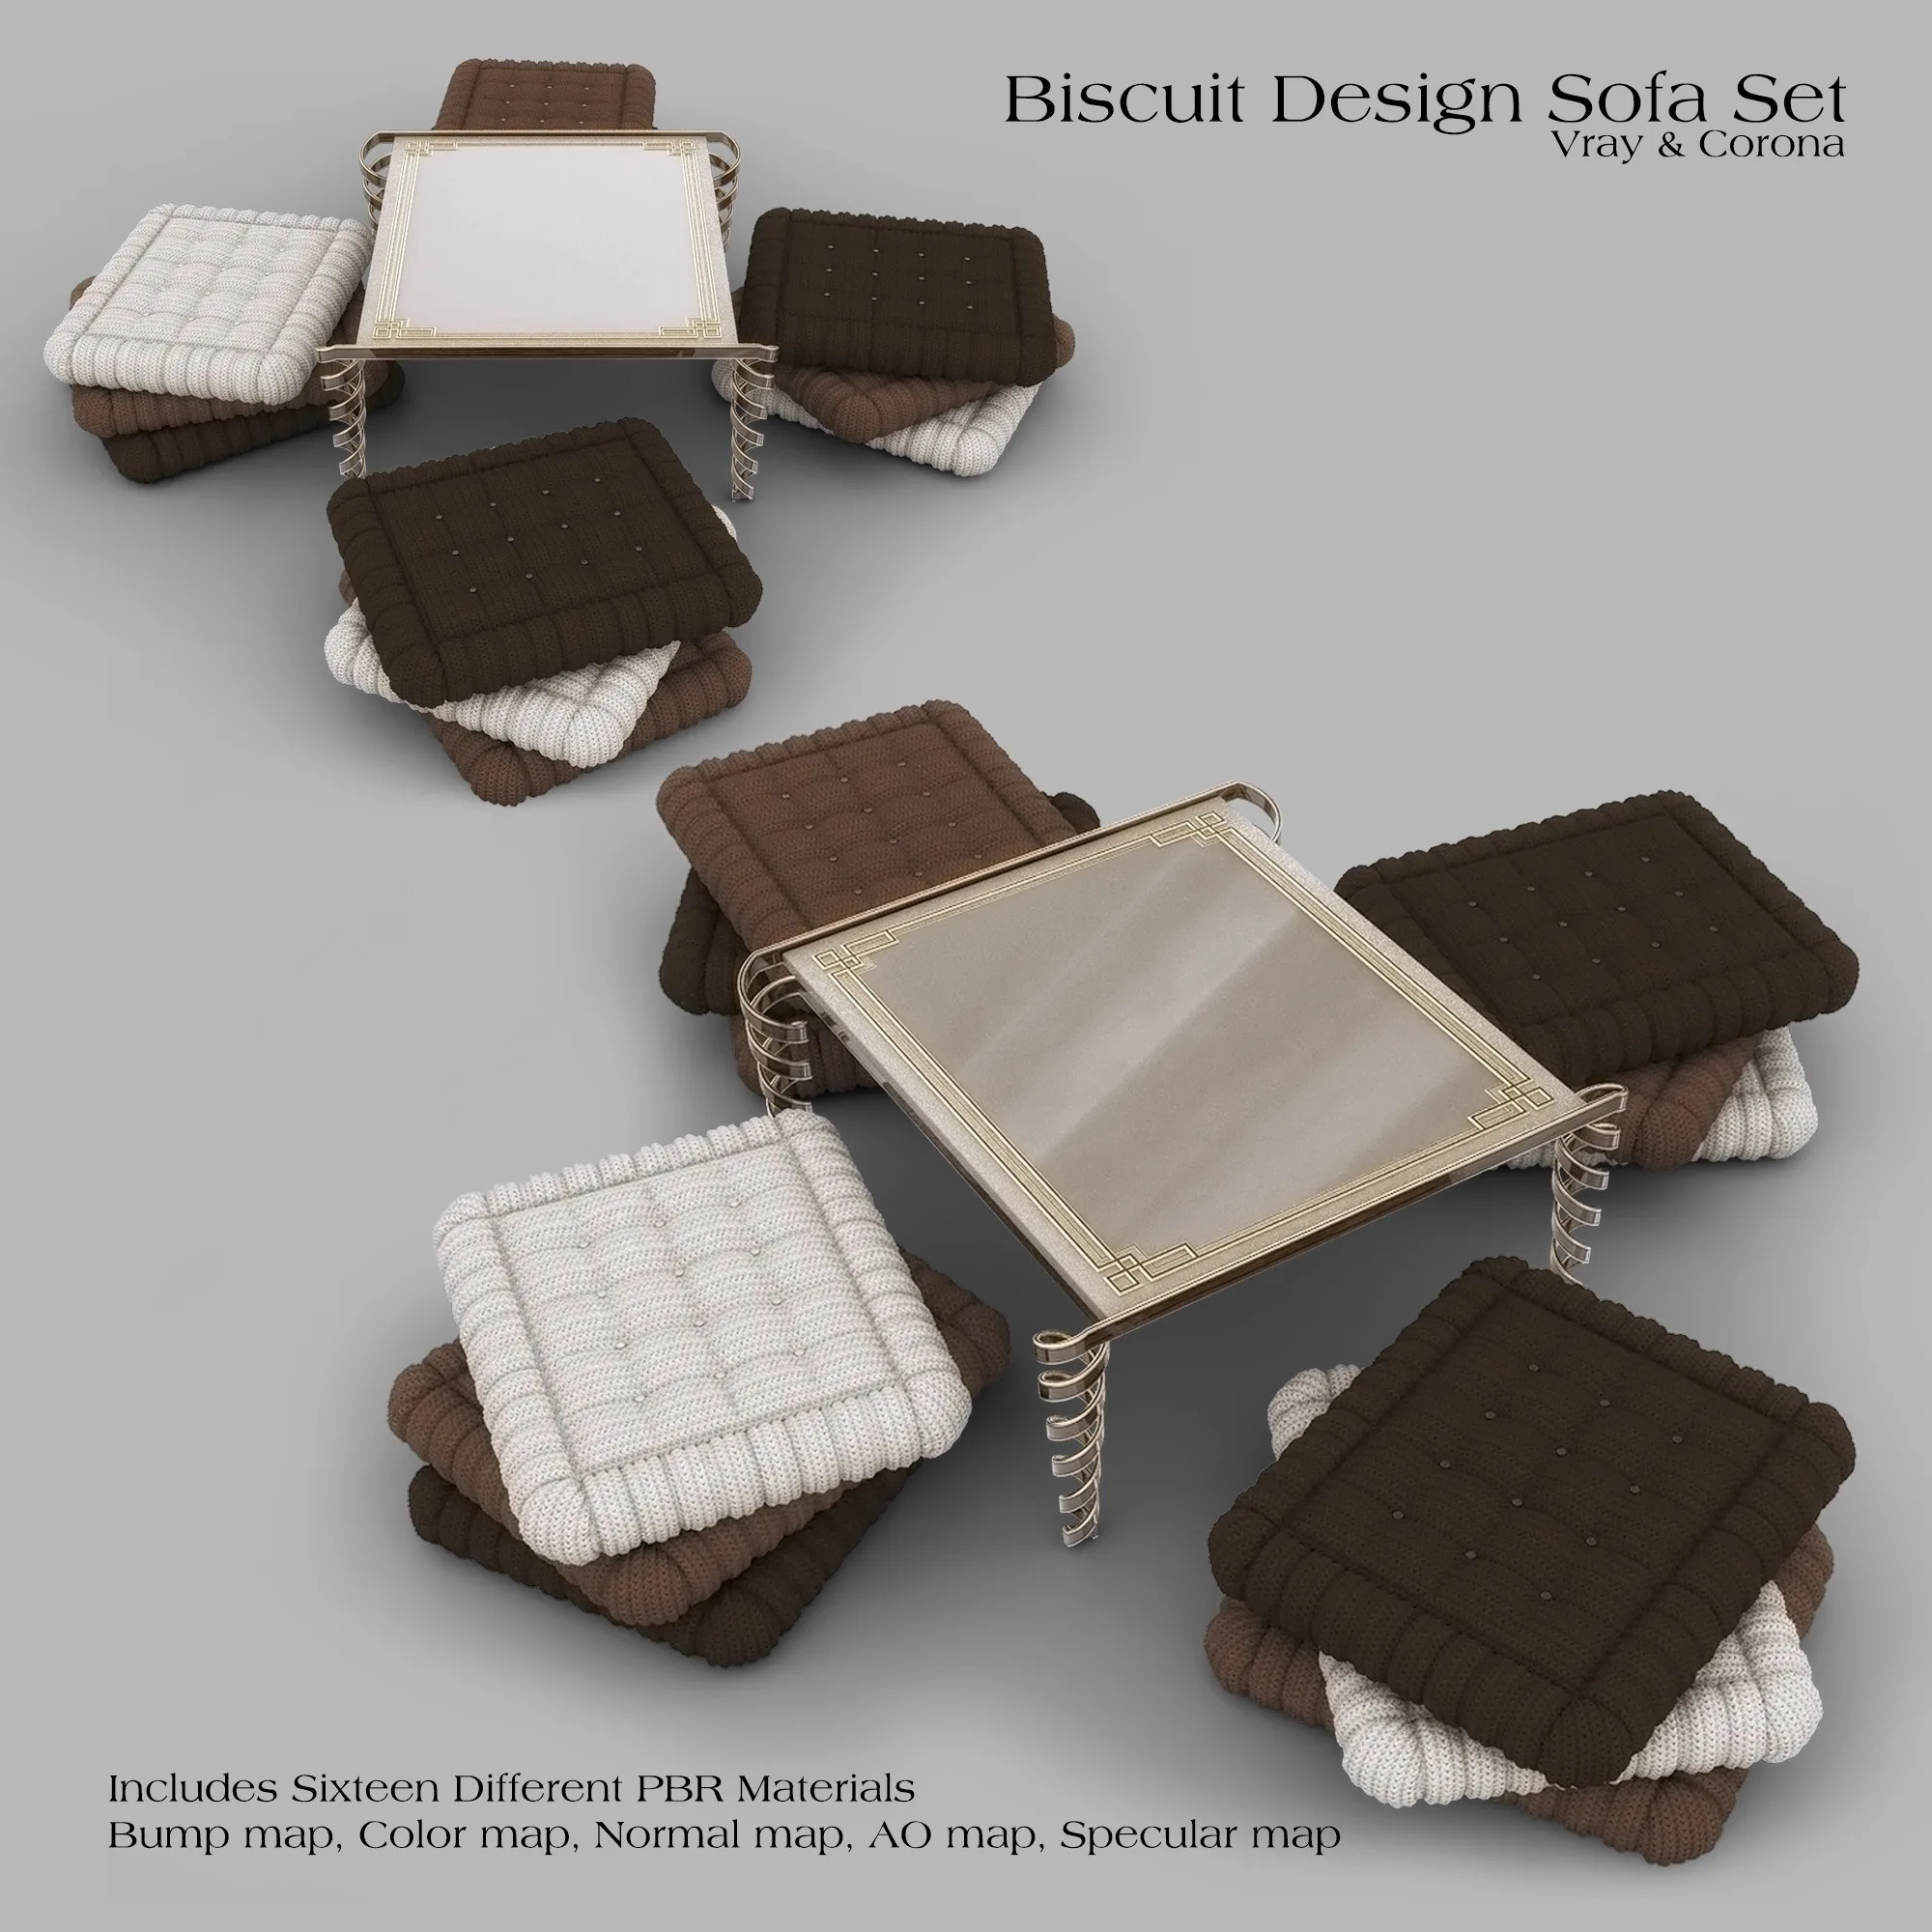 Biscuit Design Sofa Set